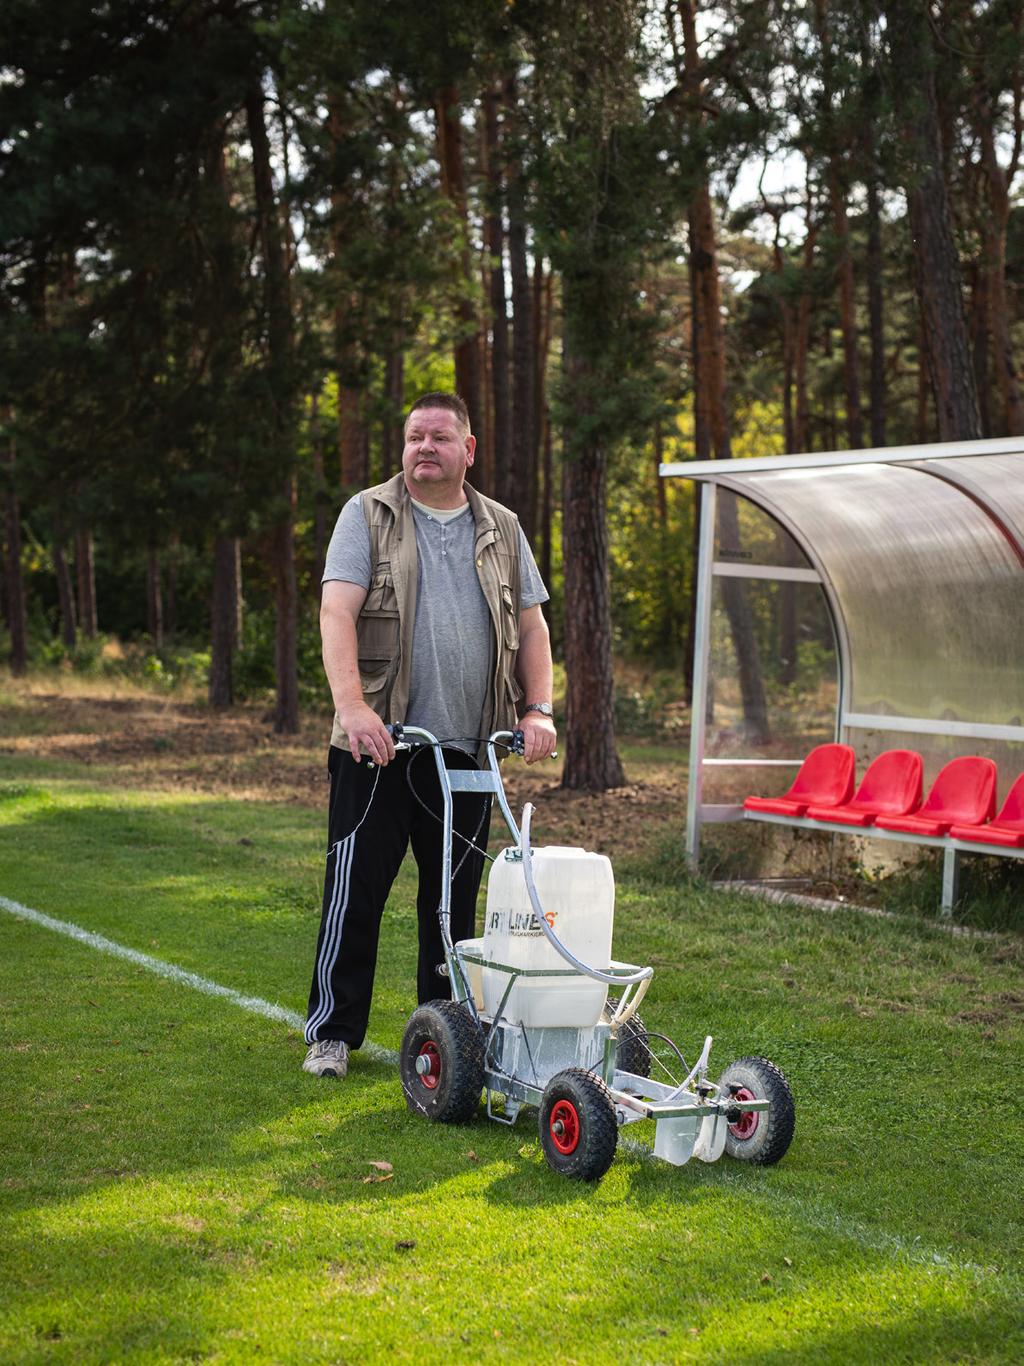 EIN MANN WIE EIN BAUM Olaf Kirchhof (51) engagiert sich bei einem Nürnberger Fußballclub als stellvertretender Platzwart und unterstützt ehrenamtlich im Ambulant unterstützten Wohnen.